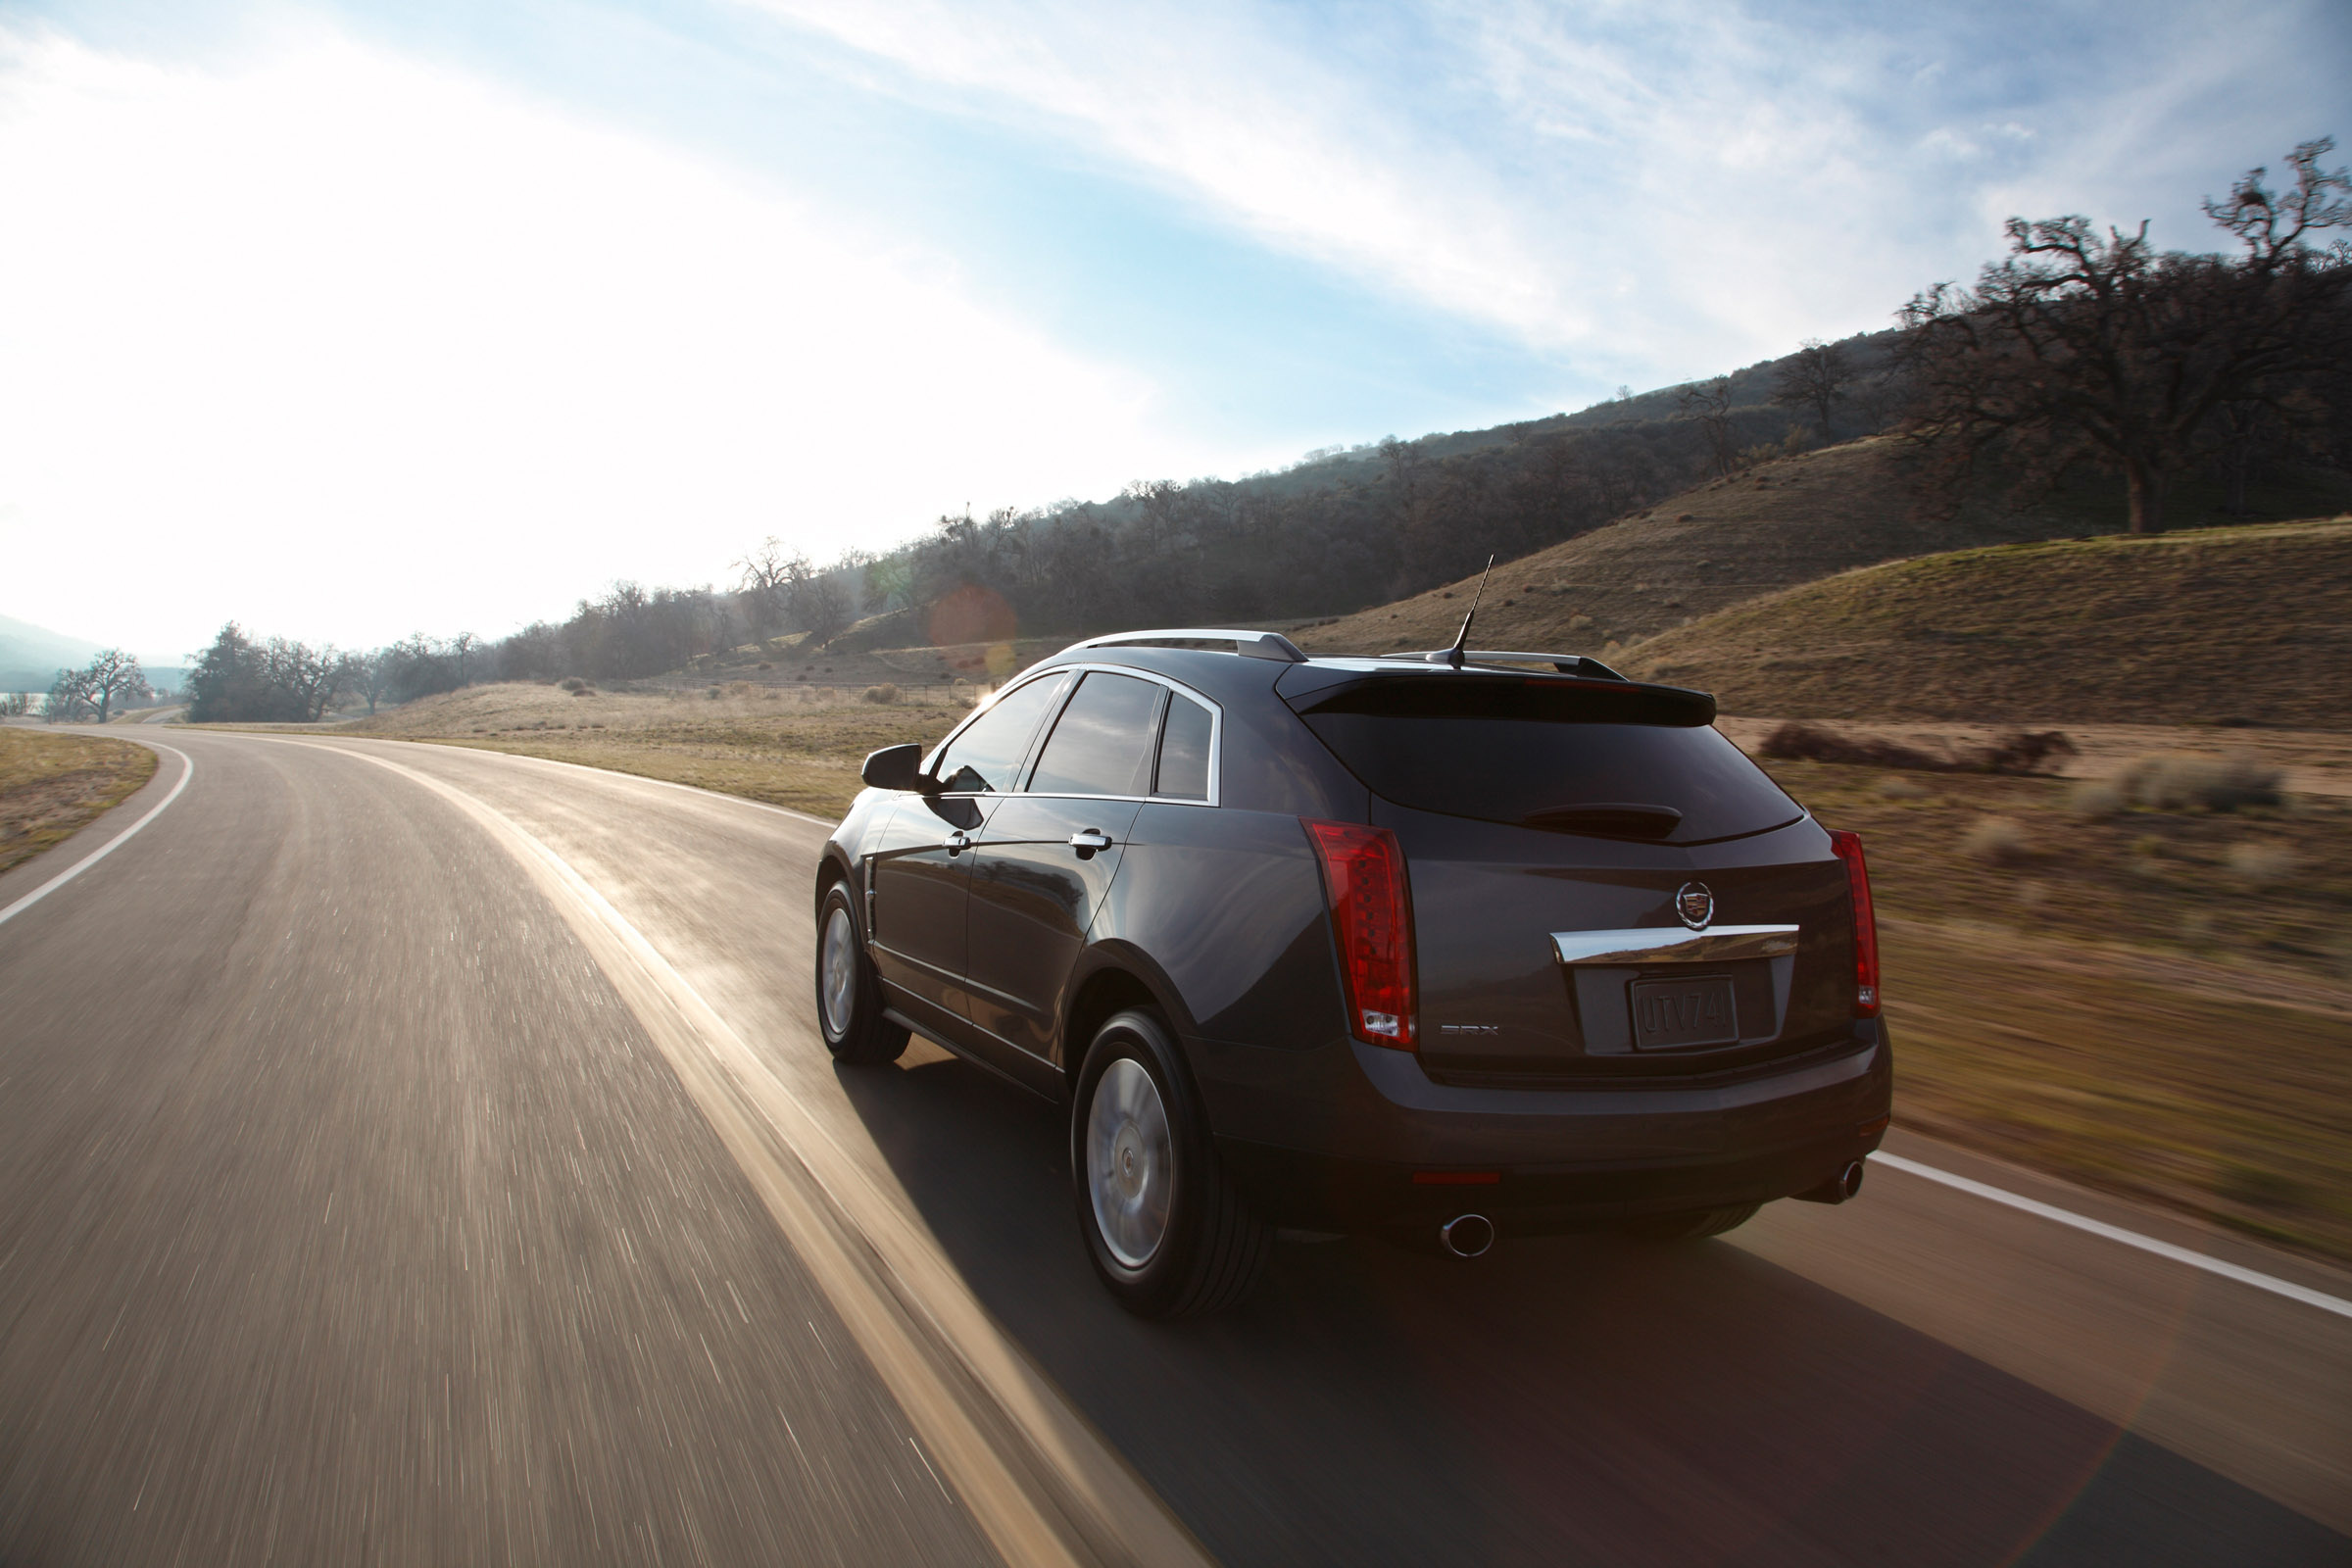 Cadillac, SRX 2011, High-definition picture, Automotive excellence, 2400x1600 HD Desktop